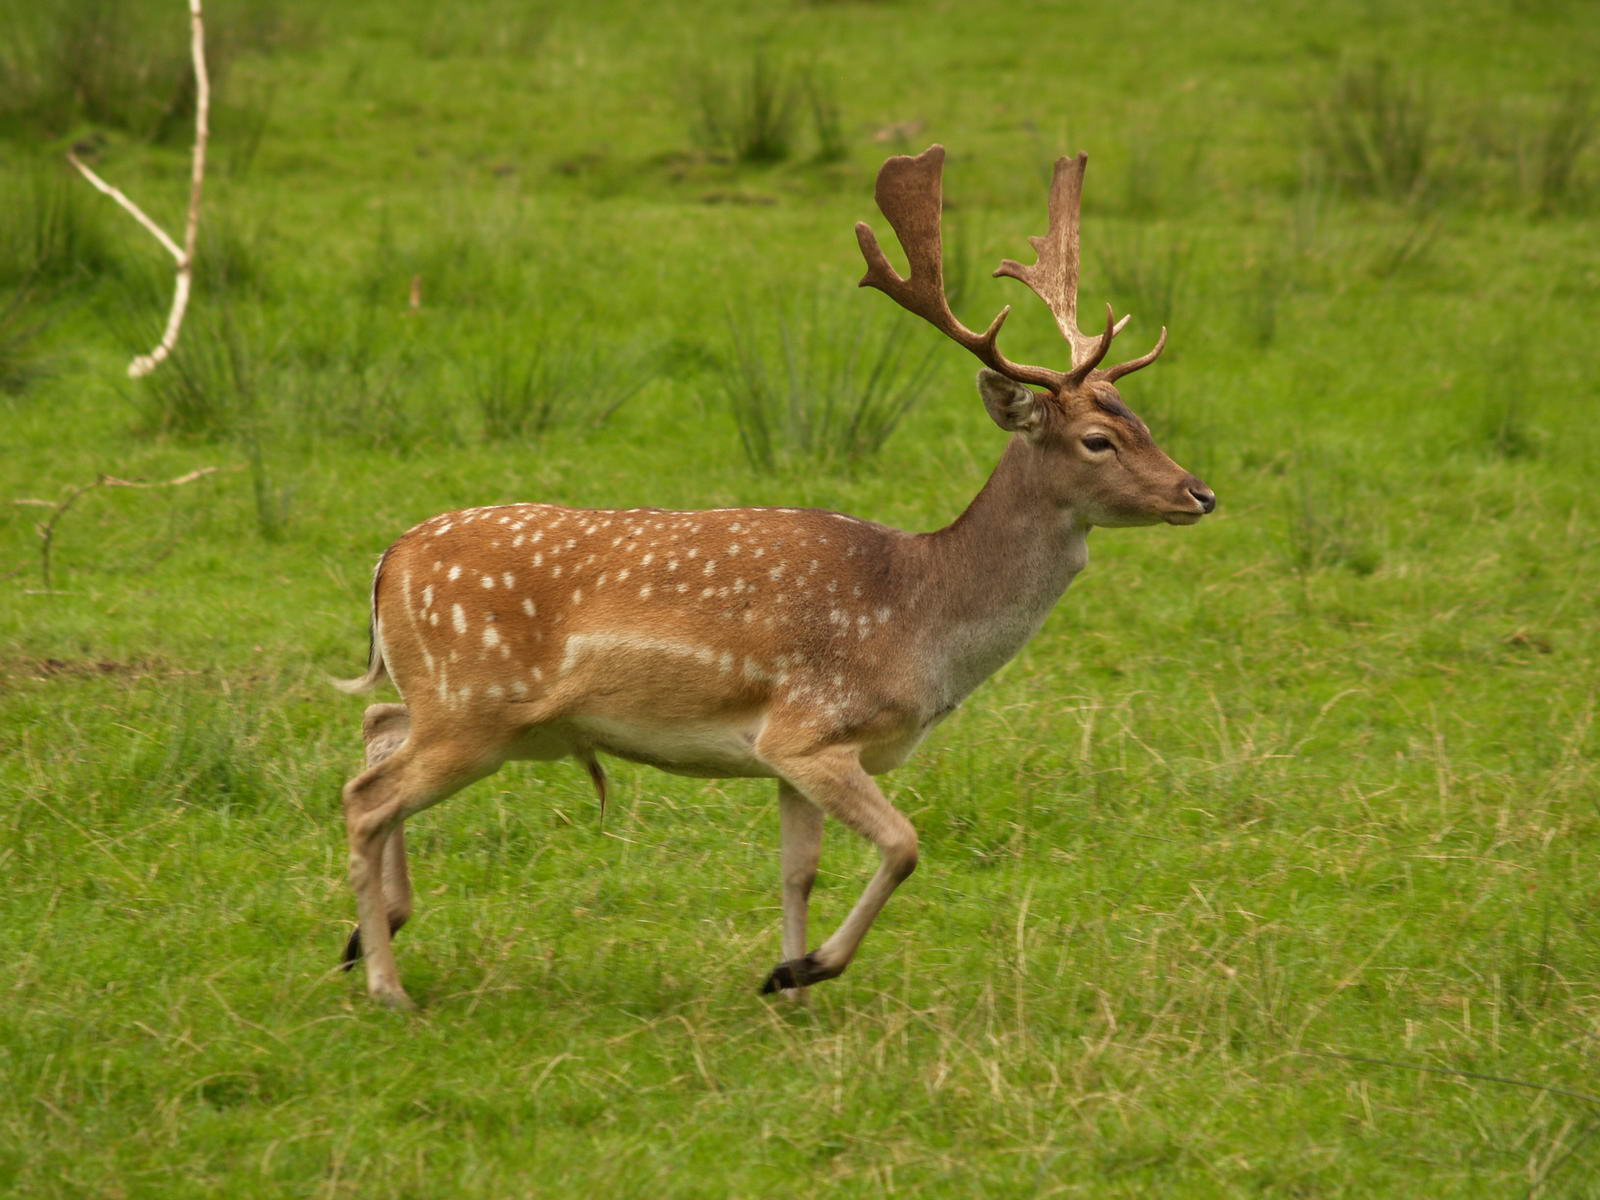 Male fallow deer on a field